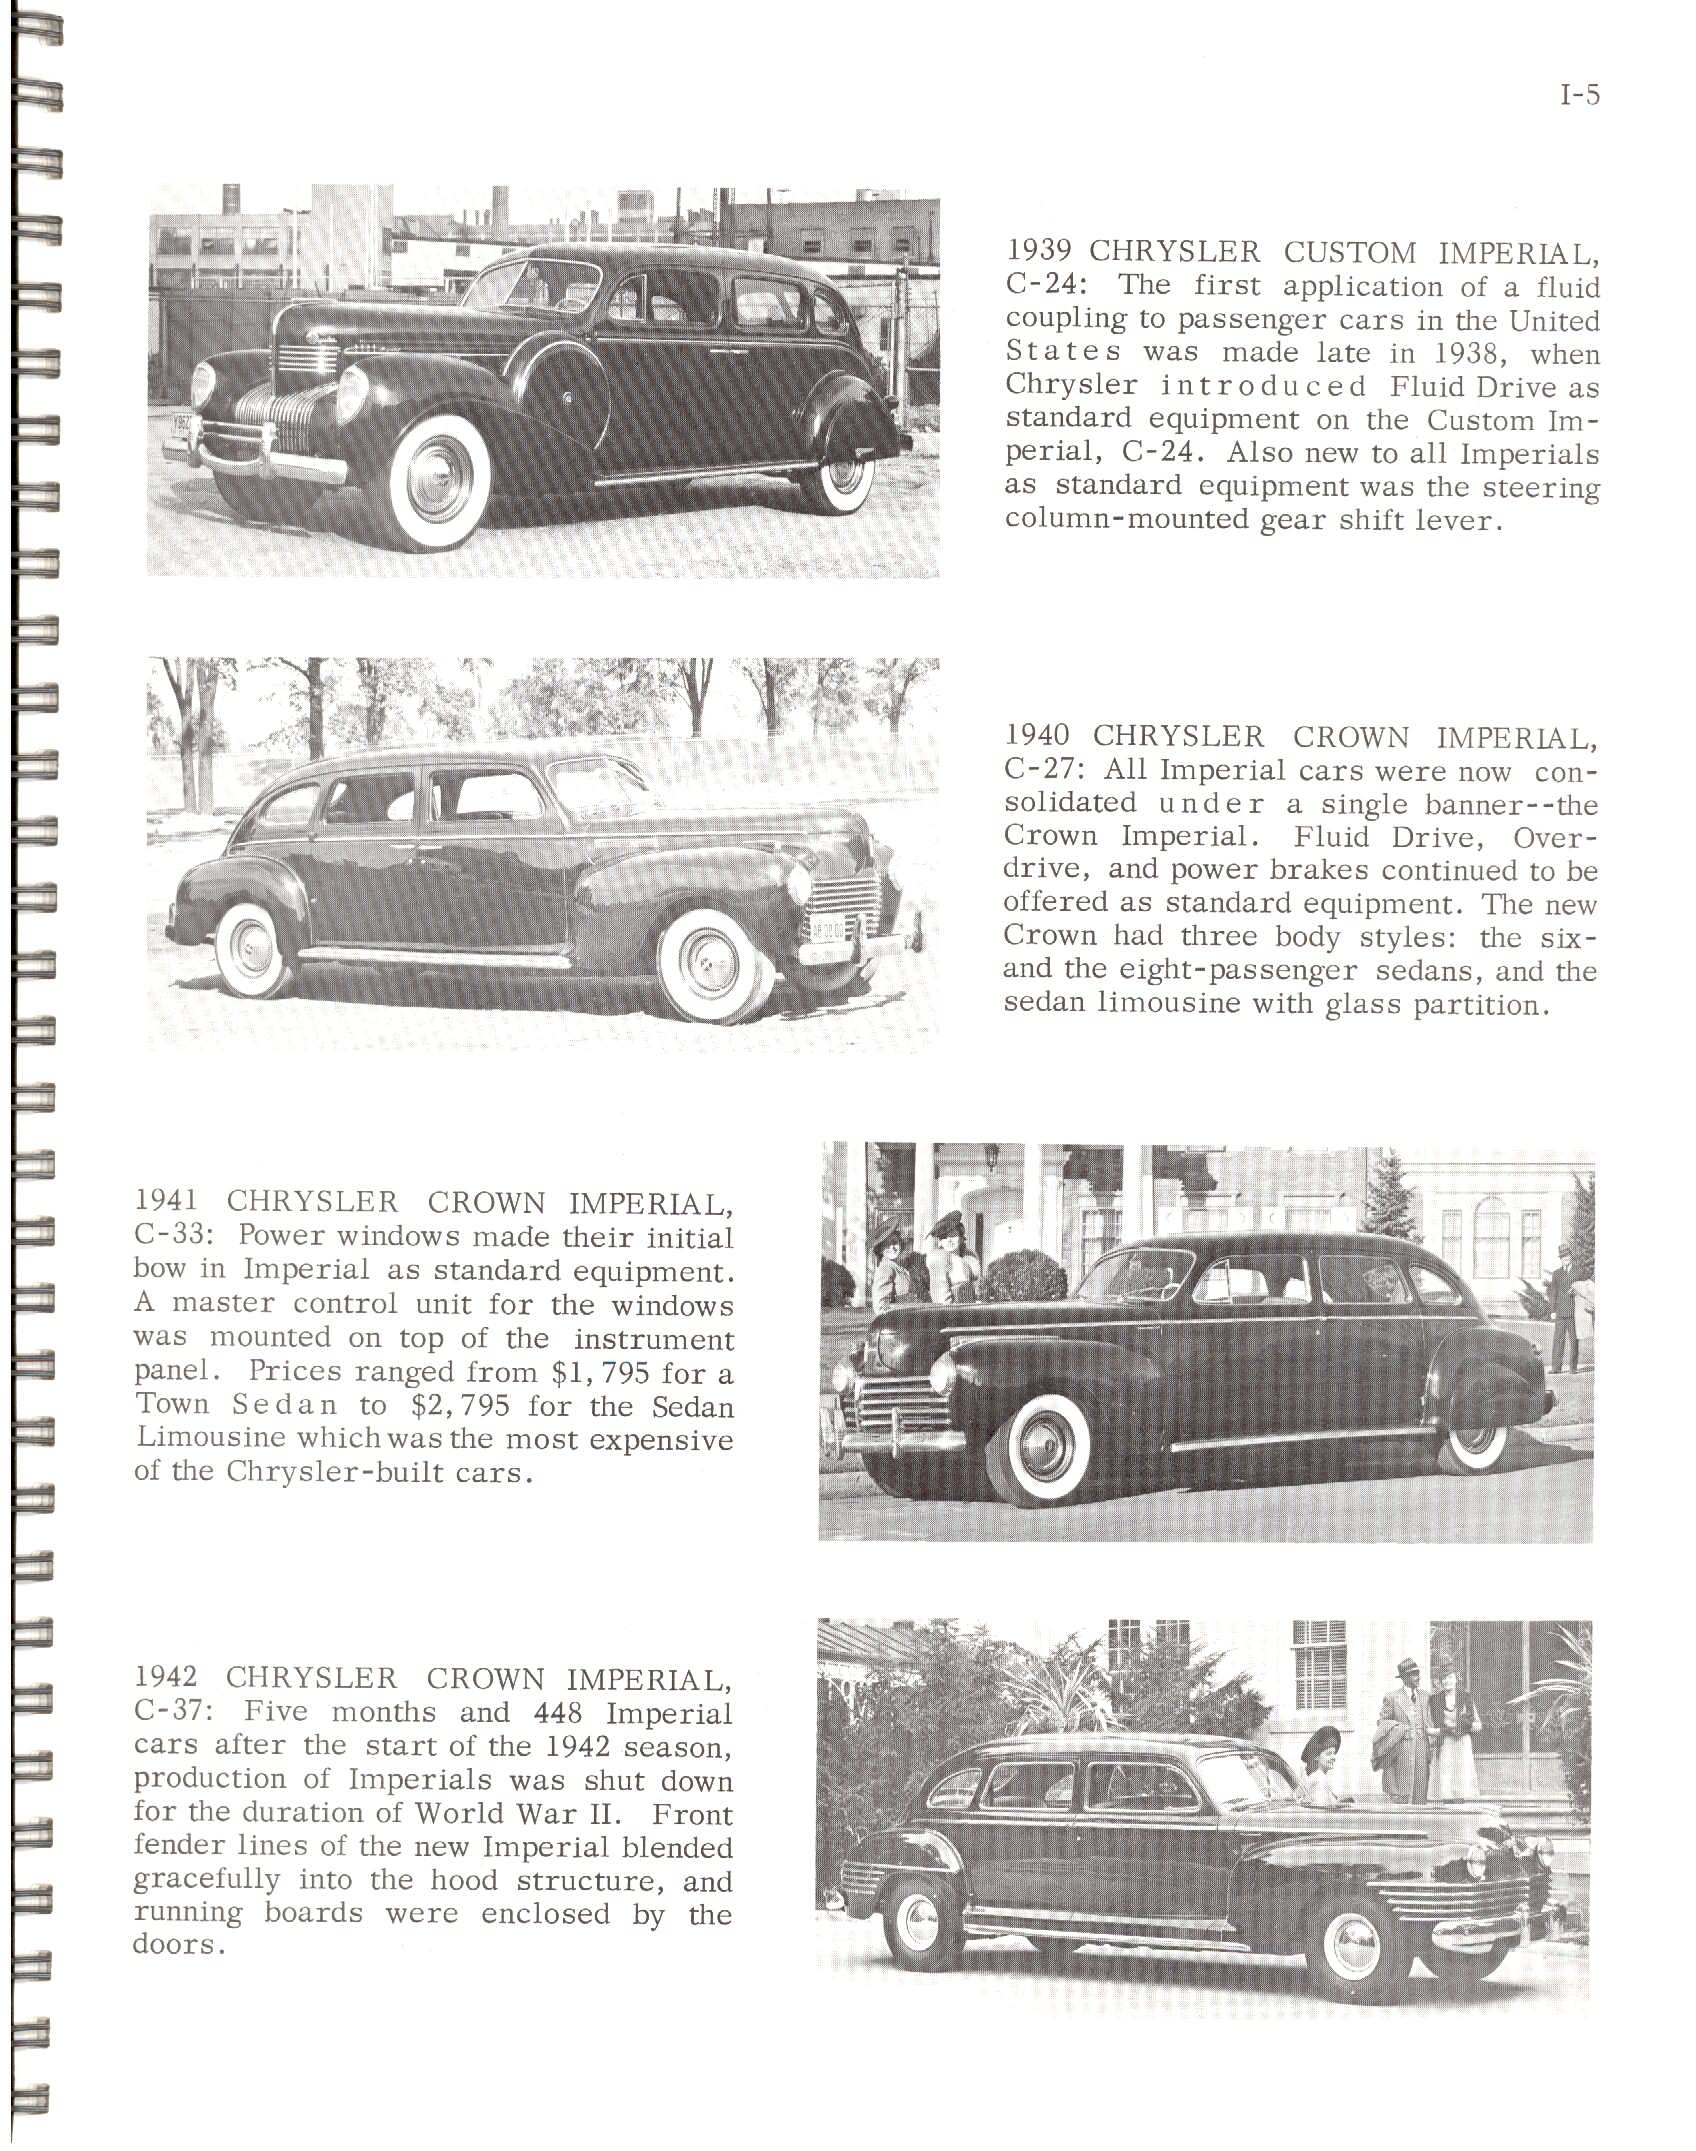 1966-History Of Chrysler Cars-I05